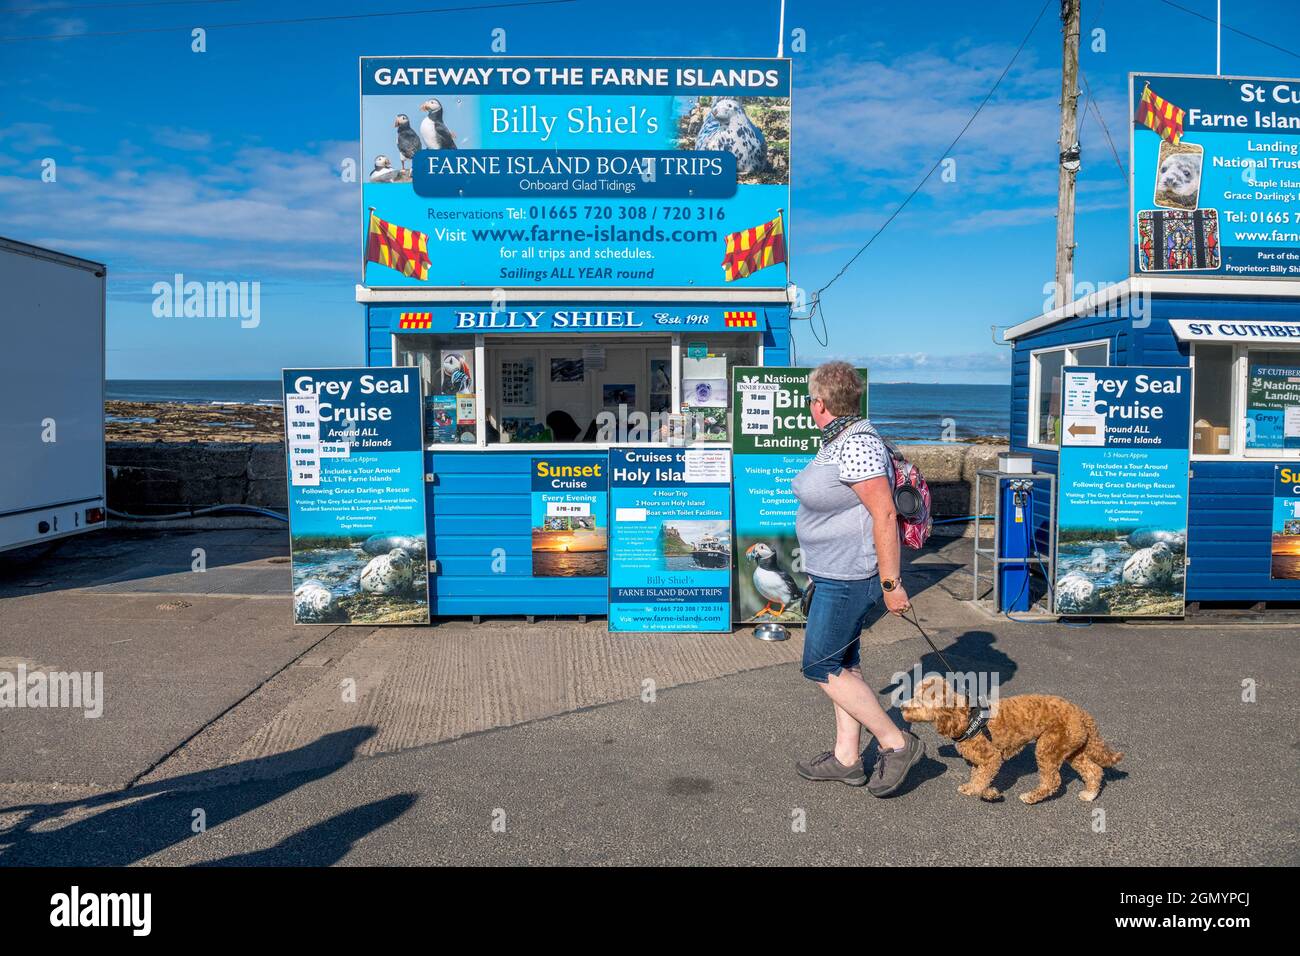 Les petites entreprises font de la publicité et vendent des excursions en bateau aussi aux îles Farne aux touristes dans les Seahouses, Northumberland. Banque D'Images